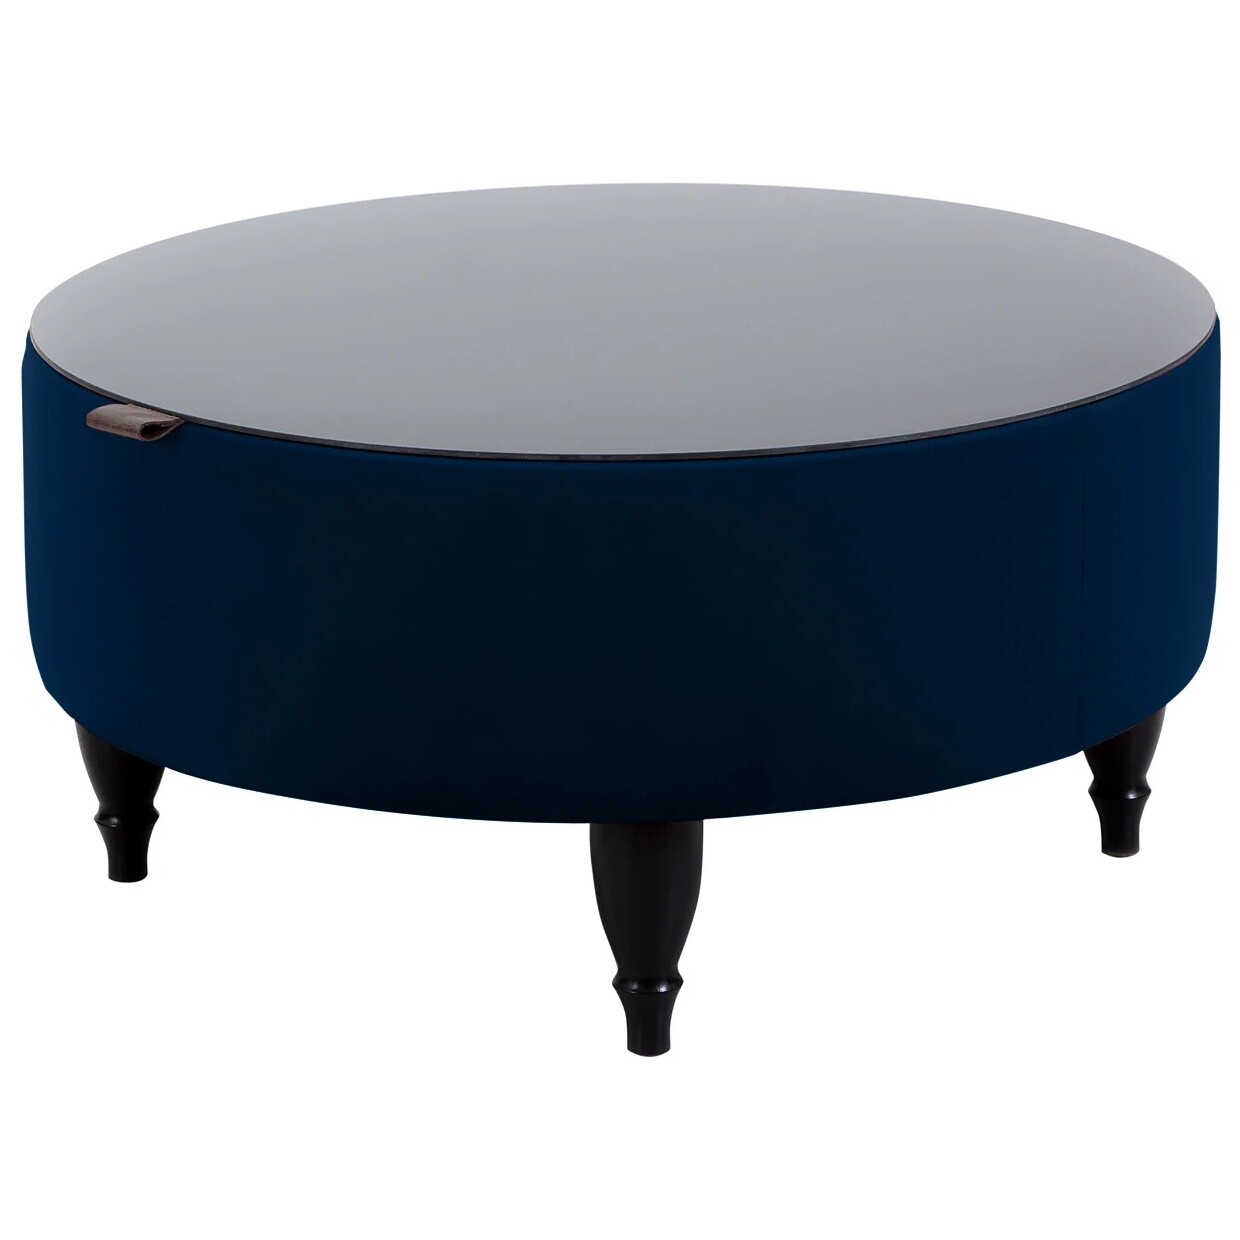 Журнальный столик круглый с ящиком для хранения 72 см синий, черный Italia Foxy 77